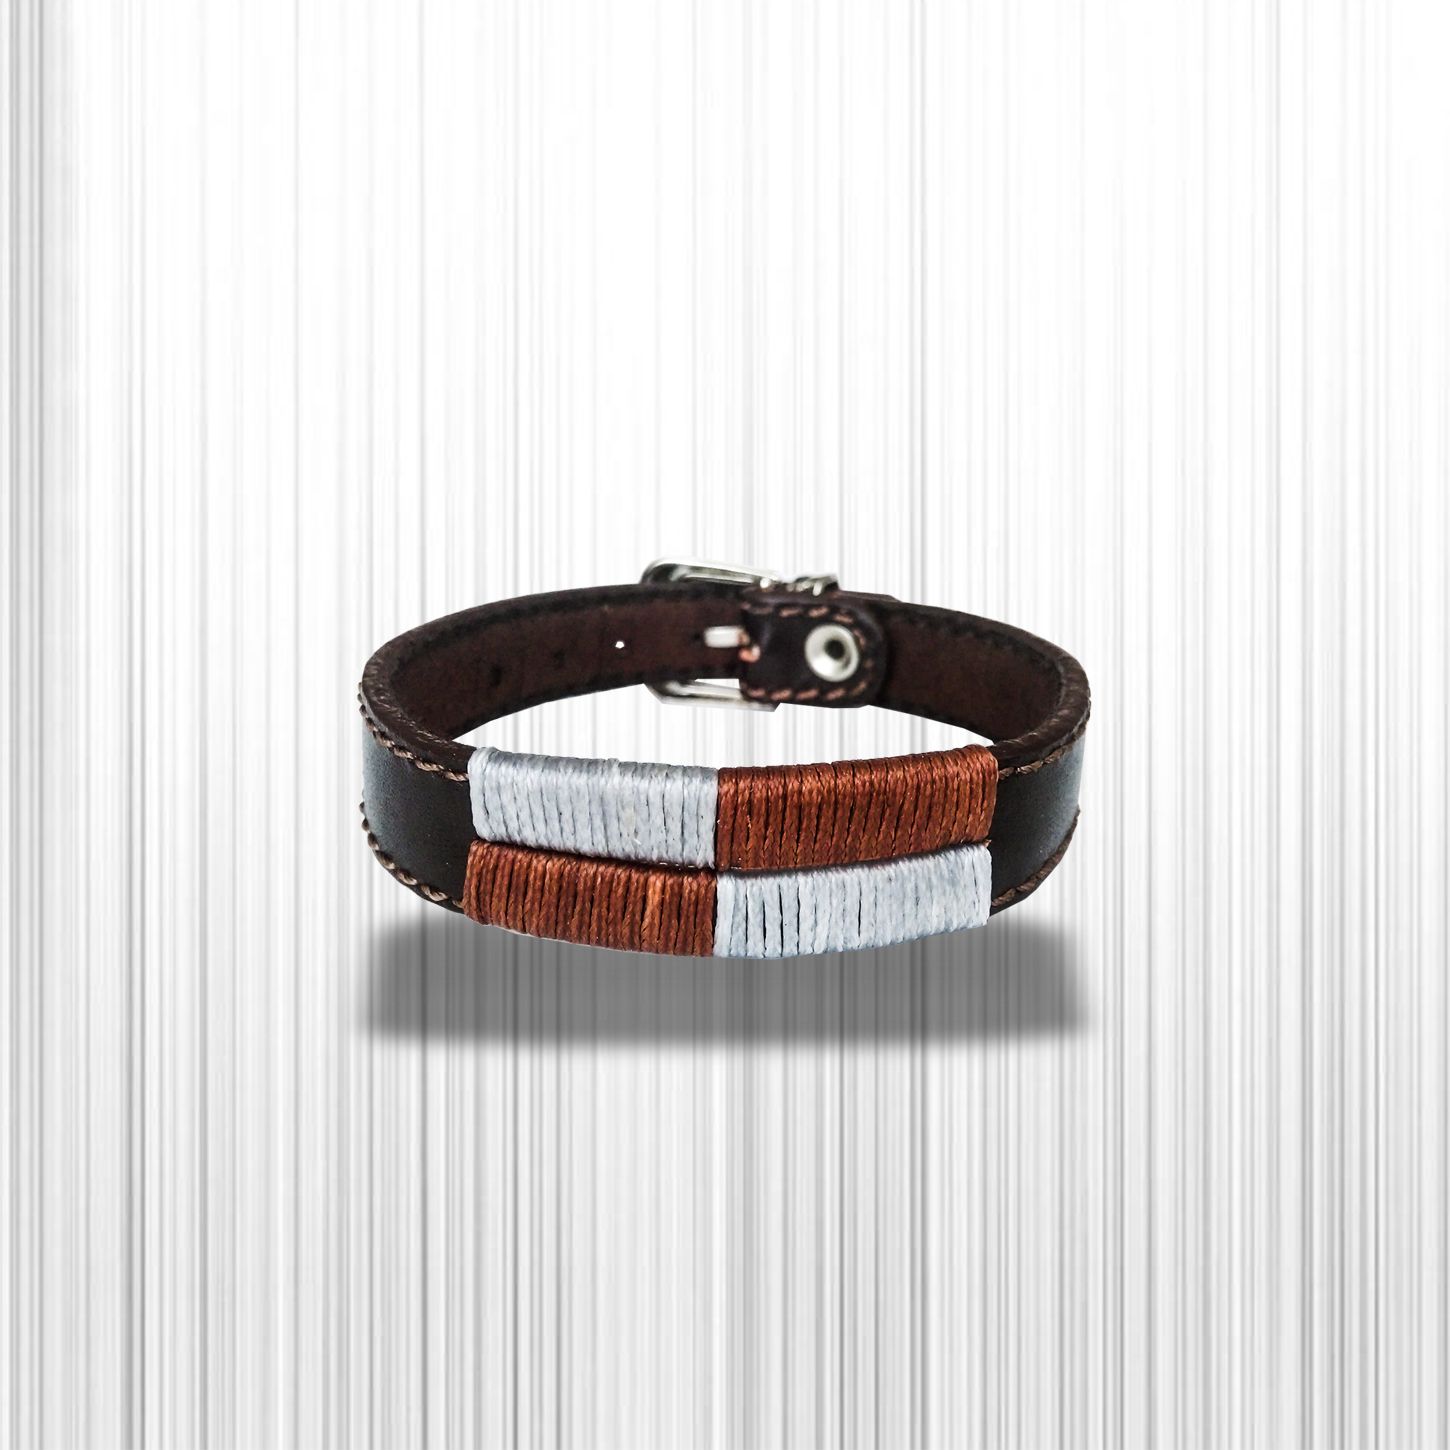 دستبند چرم وارک مدل آرت کد rb133 -  - 8